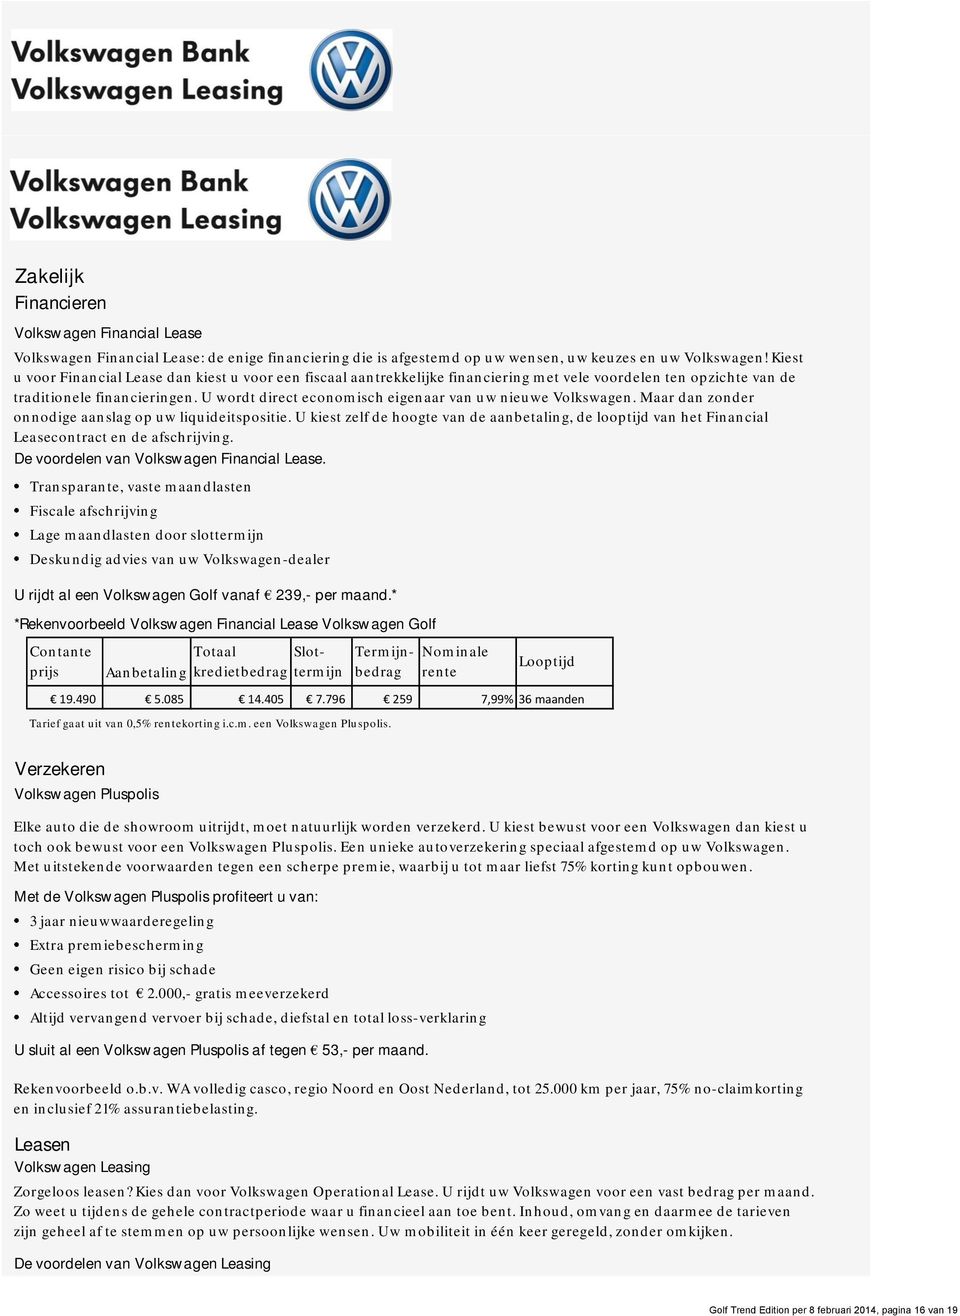 U wordt direct economisch eigenaar van uw nieuwe Volkswagen. Maar dan zonder onnodige aanslag op uw liquideitspositie.